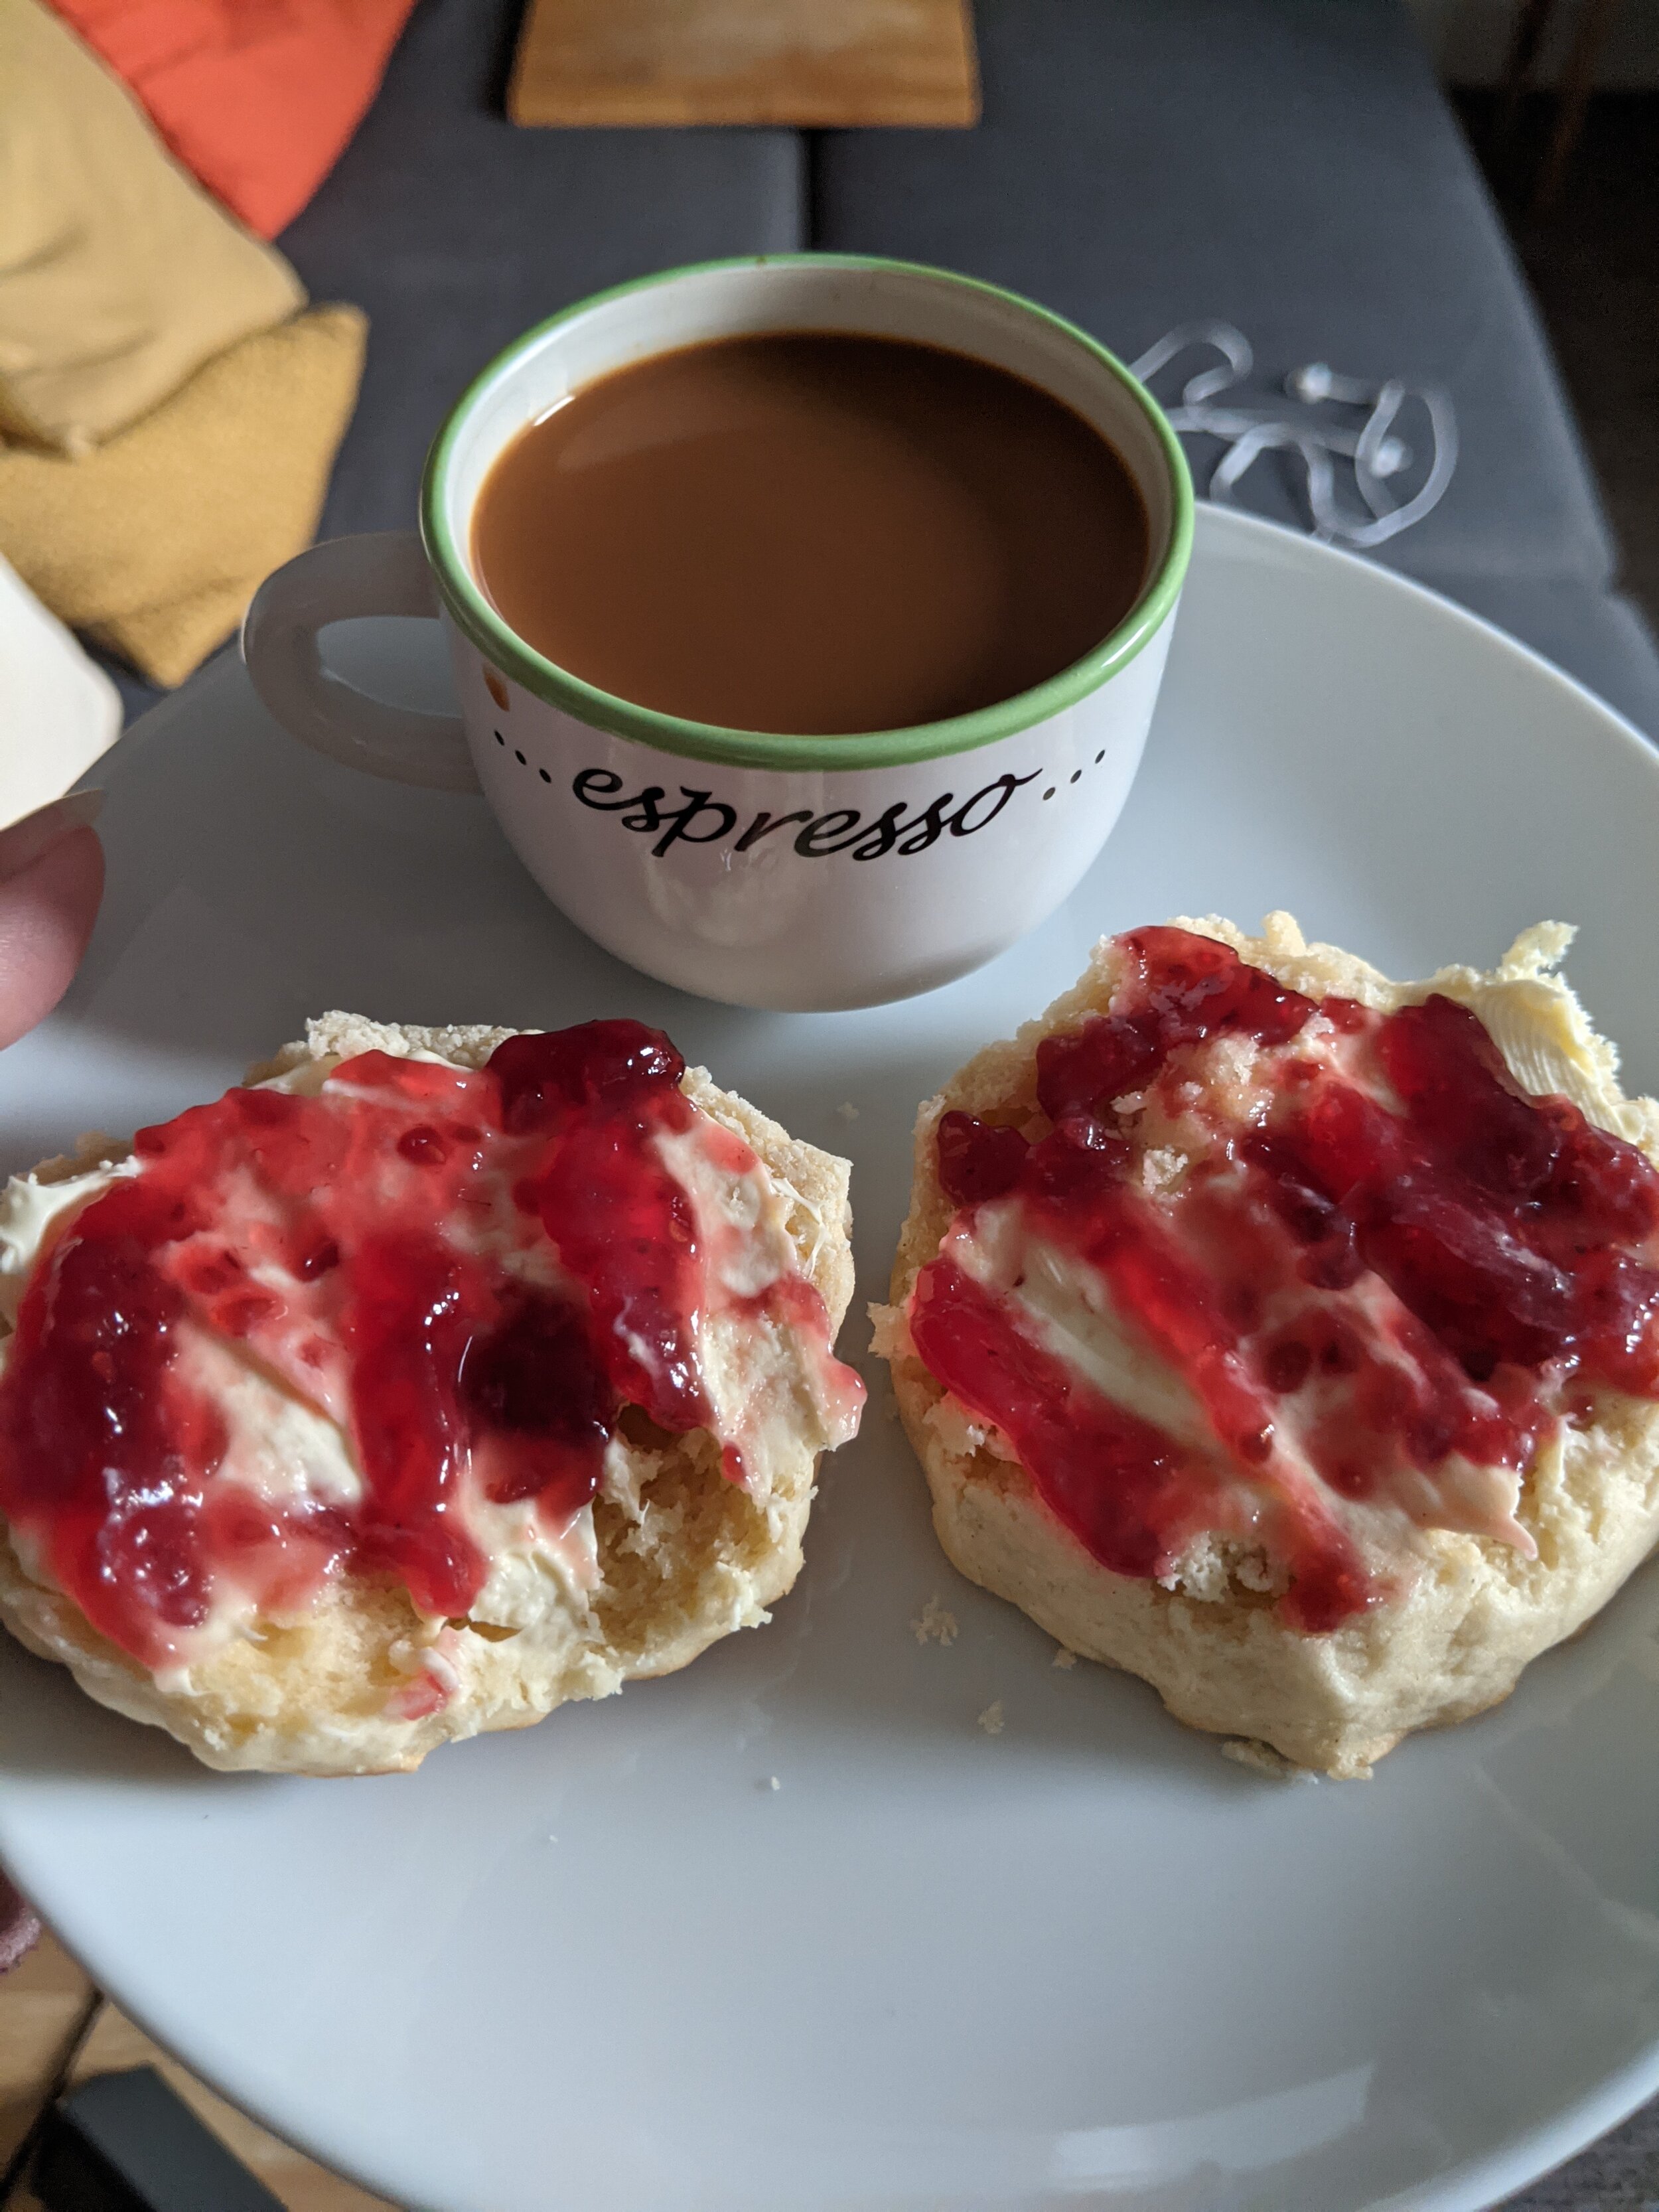 Standard breakfast in Scotland